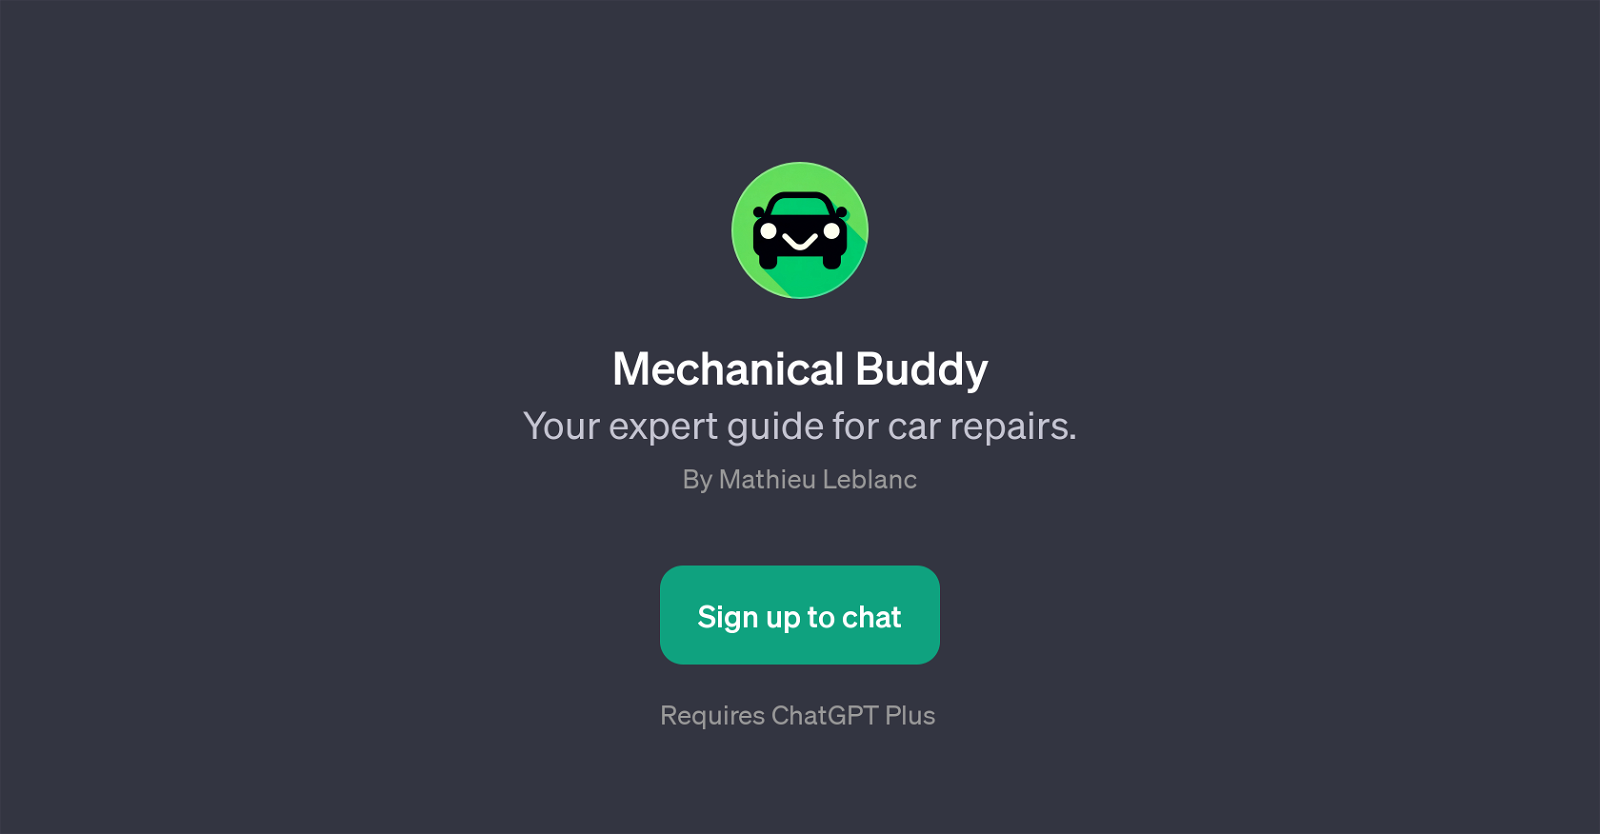 Mechanical Buddy website